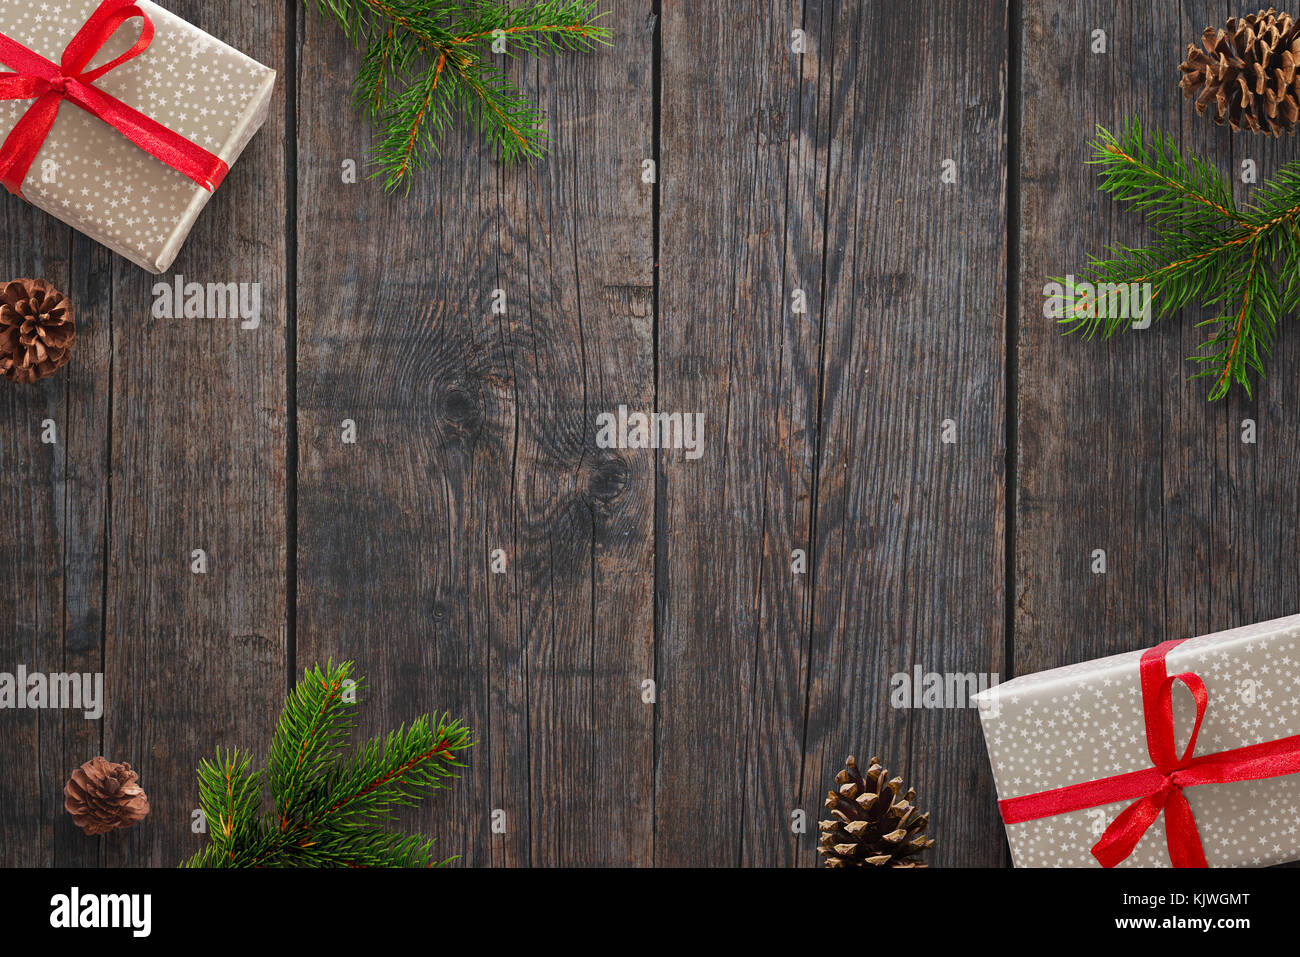 Fond de Noël avec les cadeaux, le sapin branches et pommes de pin sur des tables en bois. vue d'en haut. Banque D'Images